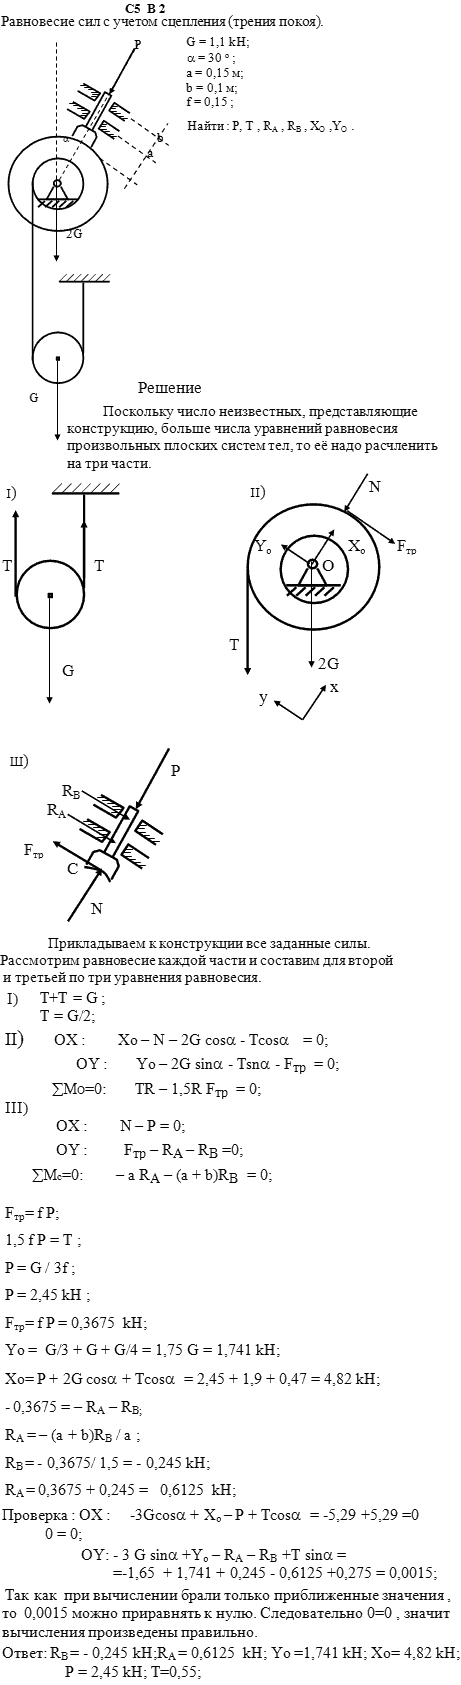 Задание С5 вариант 2. G=1,1 кН; a=0,1 м; b=0,15 м; α=30; коэффициент сцепления трения покоя 0,15; точки, в которых определяются реакции O, A